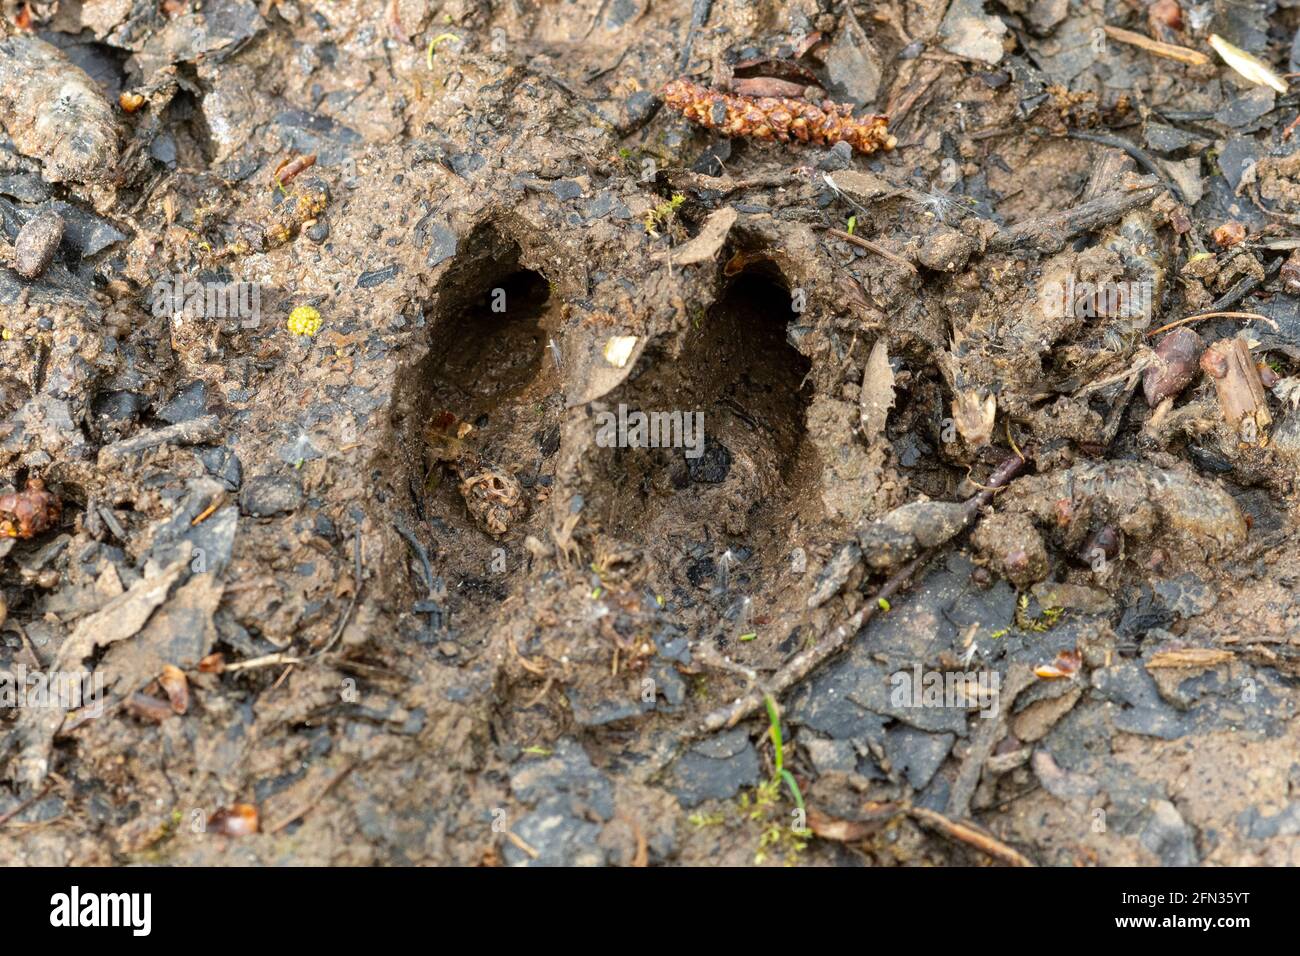 Corzos de ciervo en barro, huellas de Capreolus capreolus, signos de animales Foto de stock